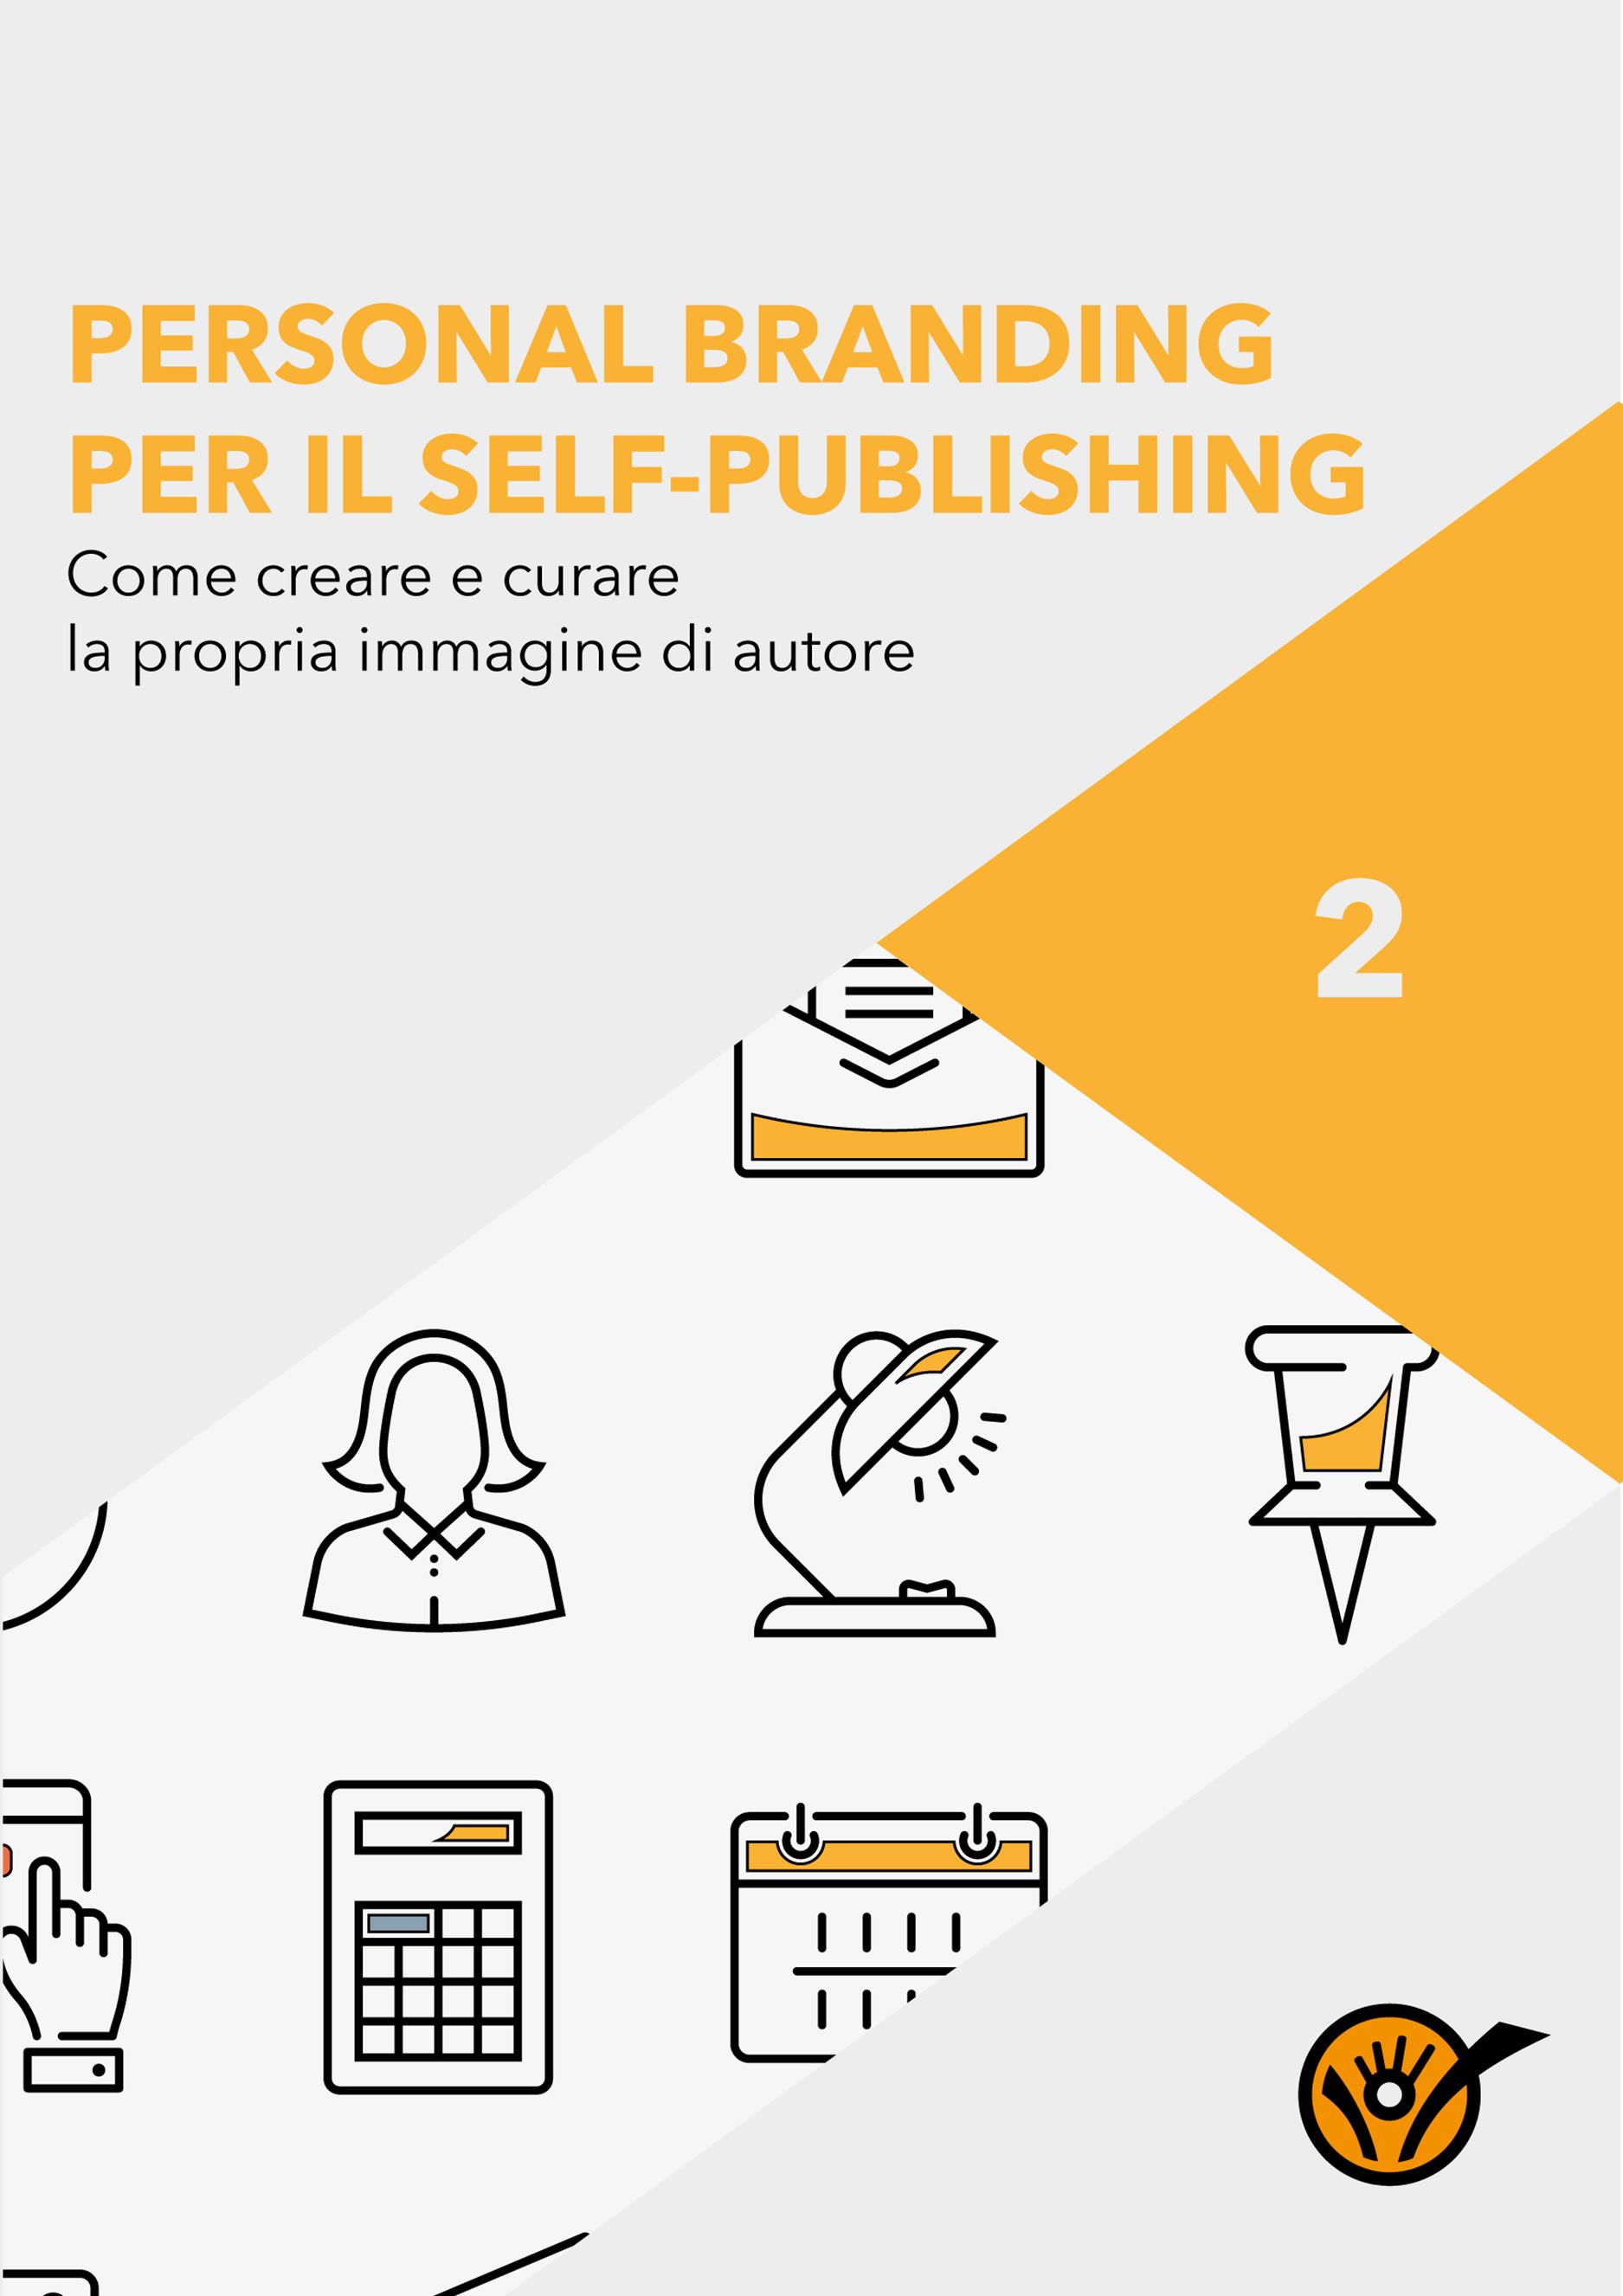 Personal Branding per il Self-Publishing - Come creare e curare la propria immagine di autore